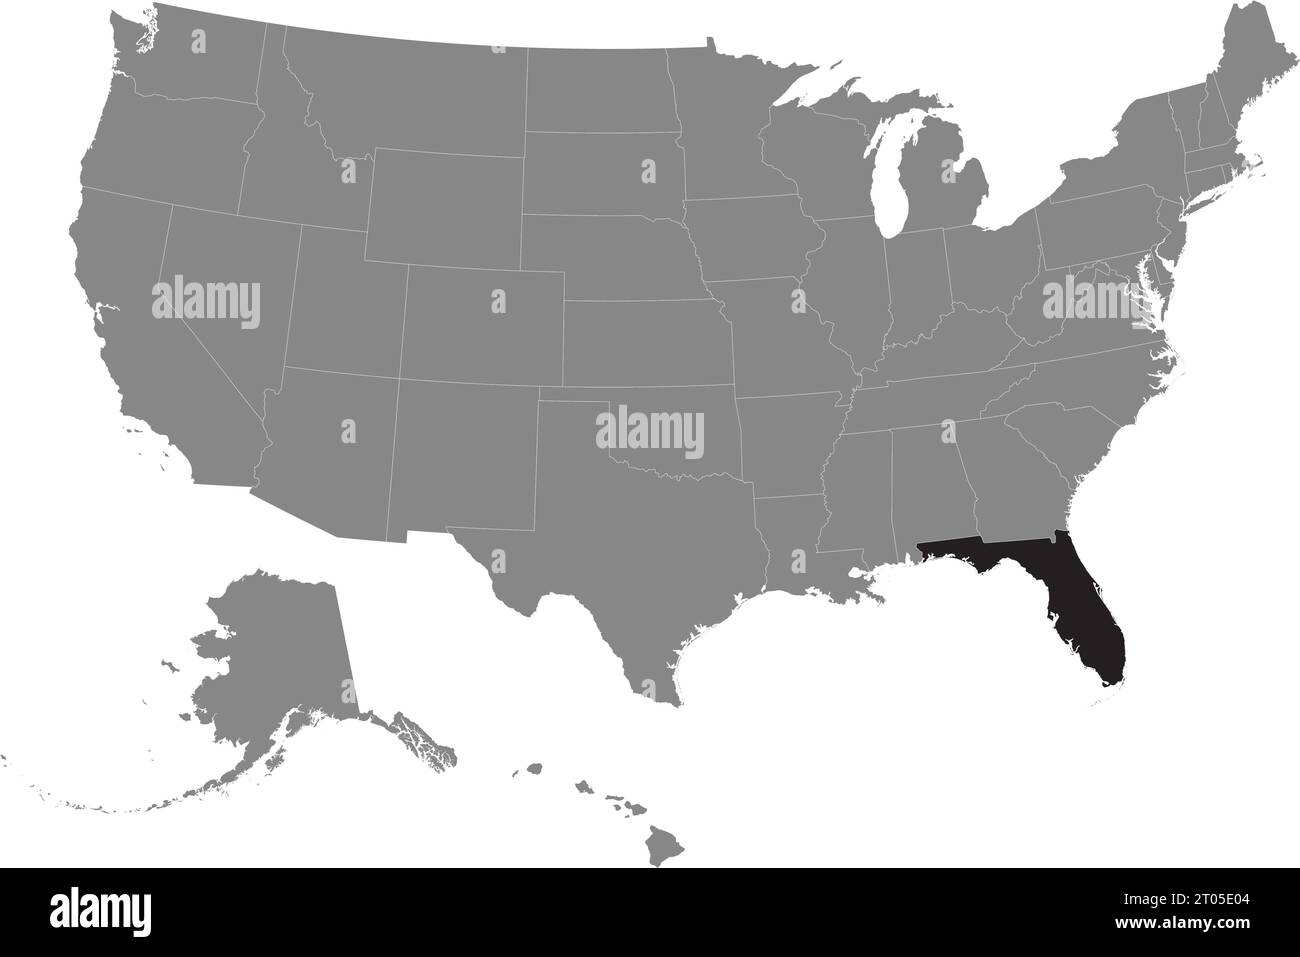 Schwarze CMYK-Bundeskarte von FLORIDA in detaillierter grauer, leerer politischer Karte der Vereinigten Staaten von Amerika auf transparentem Hintergrund Stock Vektor